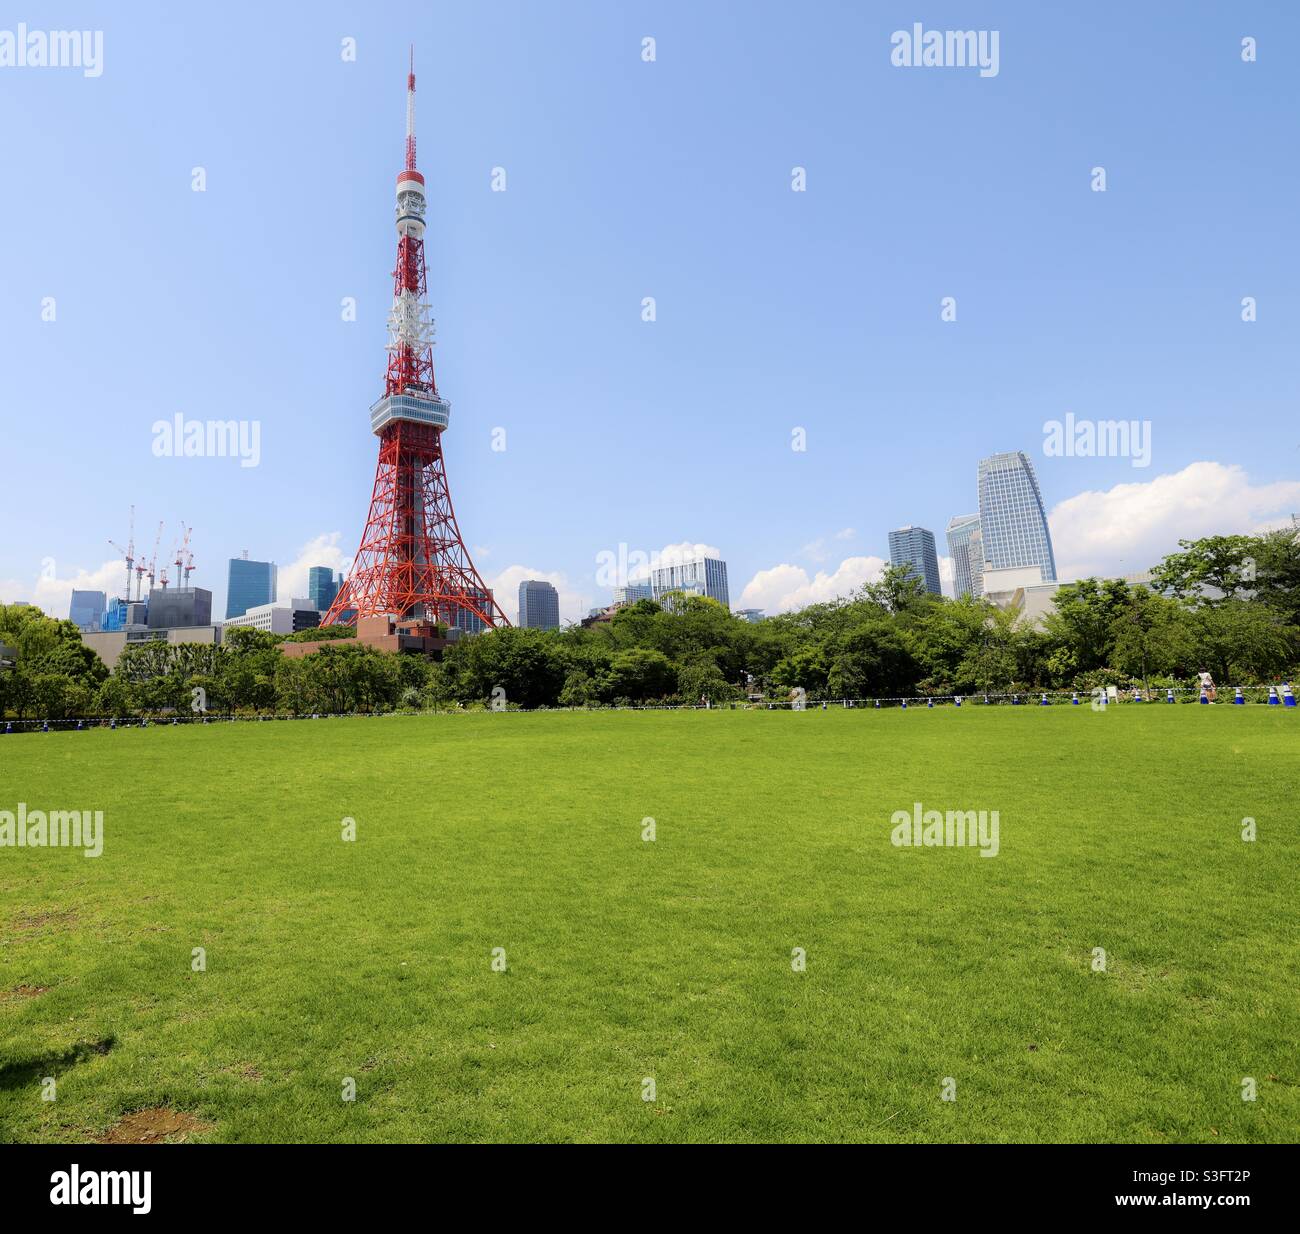 La torre de Tokio está situada en 4 Chome 2-8, Shiba Park en Minato Ward, Tokio, Japón, 2nd Torre más alta de Japón, con una altura de 332,9 metros. Foto de stock